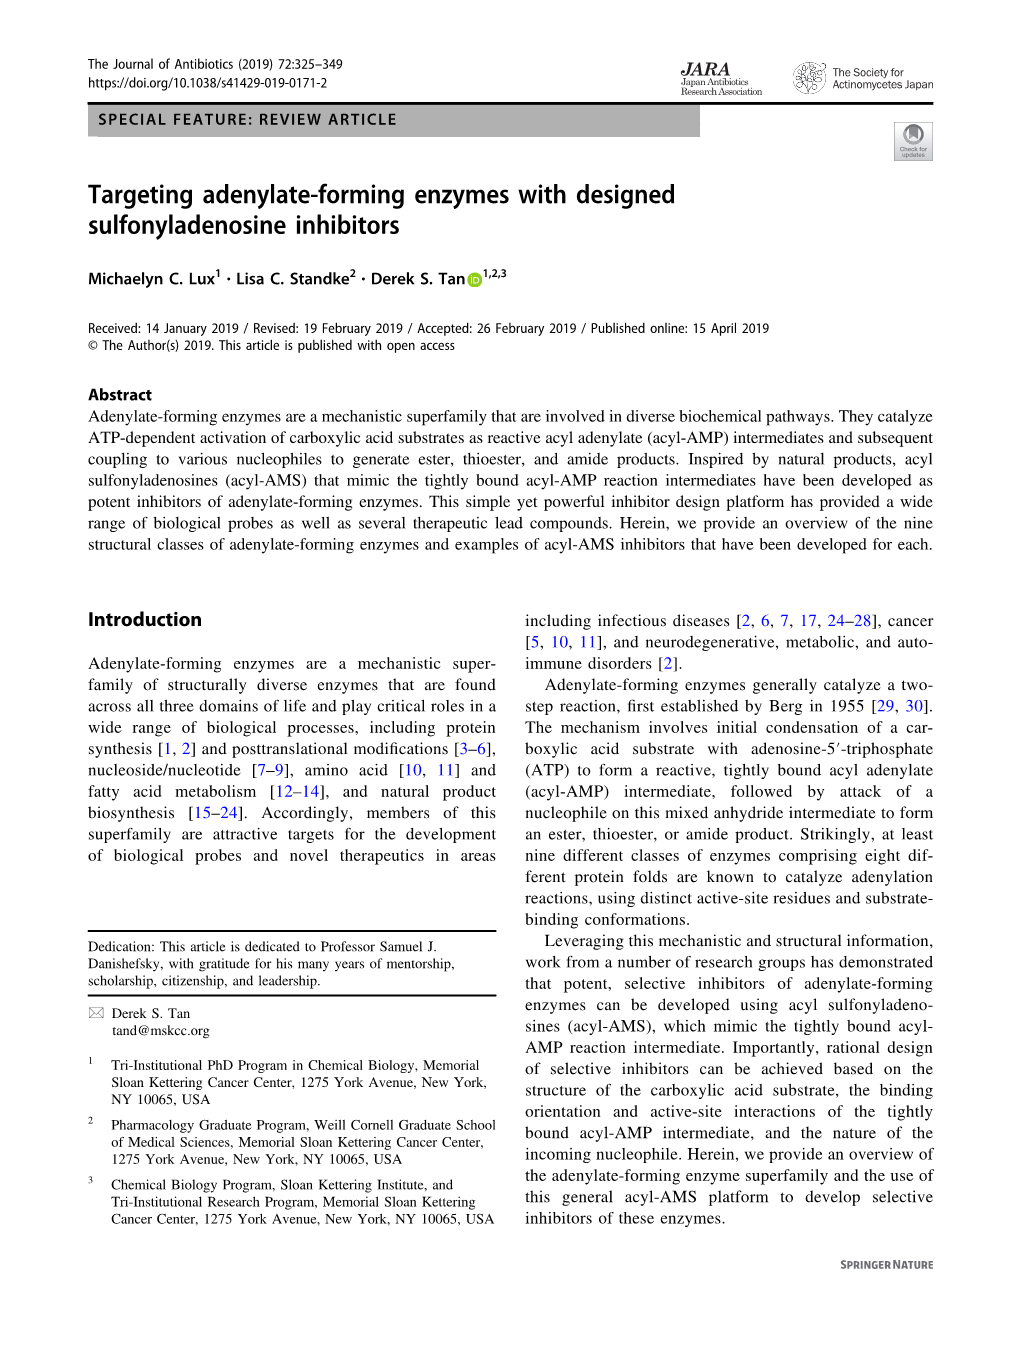 Targeting Adenylate-Forming Enzymes with Designed Sulfonyladenosine Inhibitors